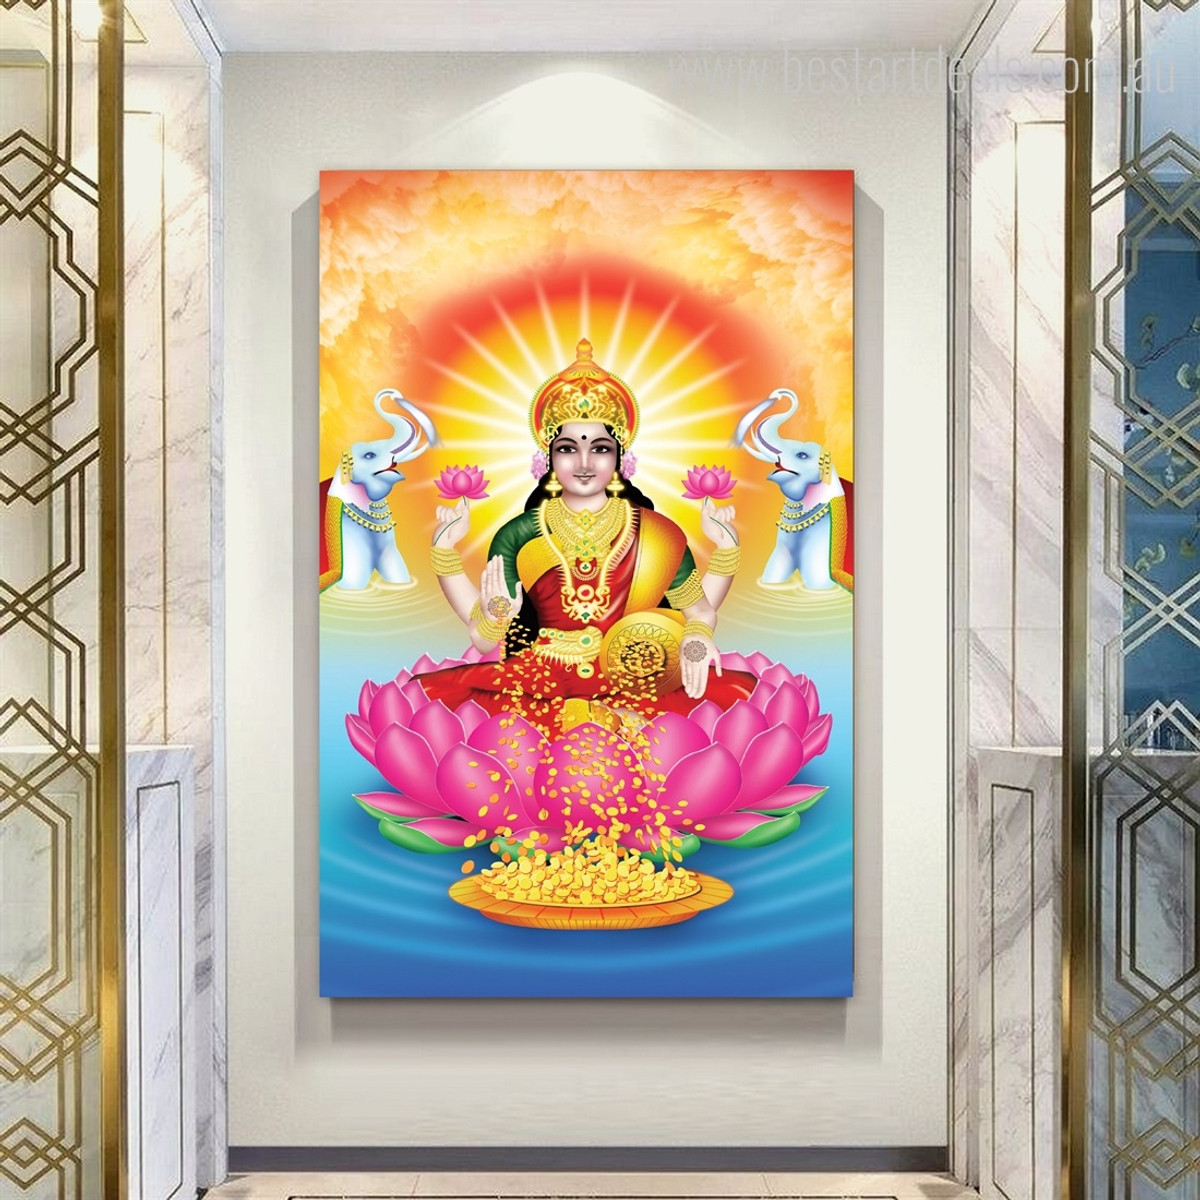 Lakshmi Indian Goddess Hindus Indian Deities Spiritual Modern Photograph Art Canvas Print for Room Wall Equipment